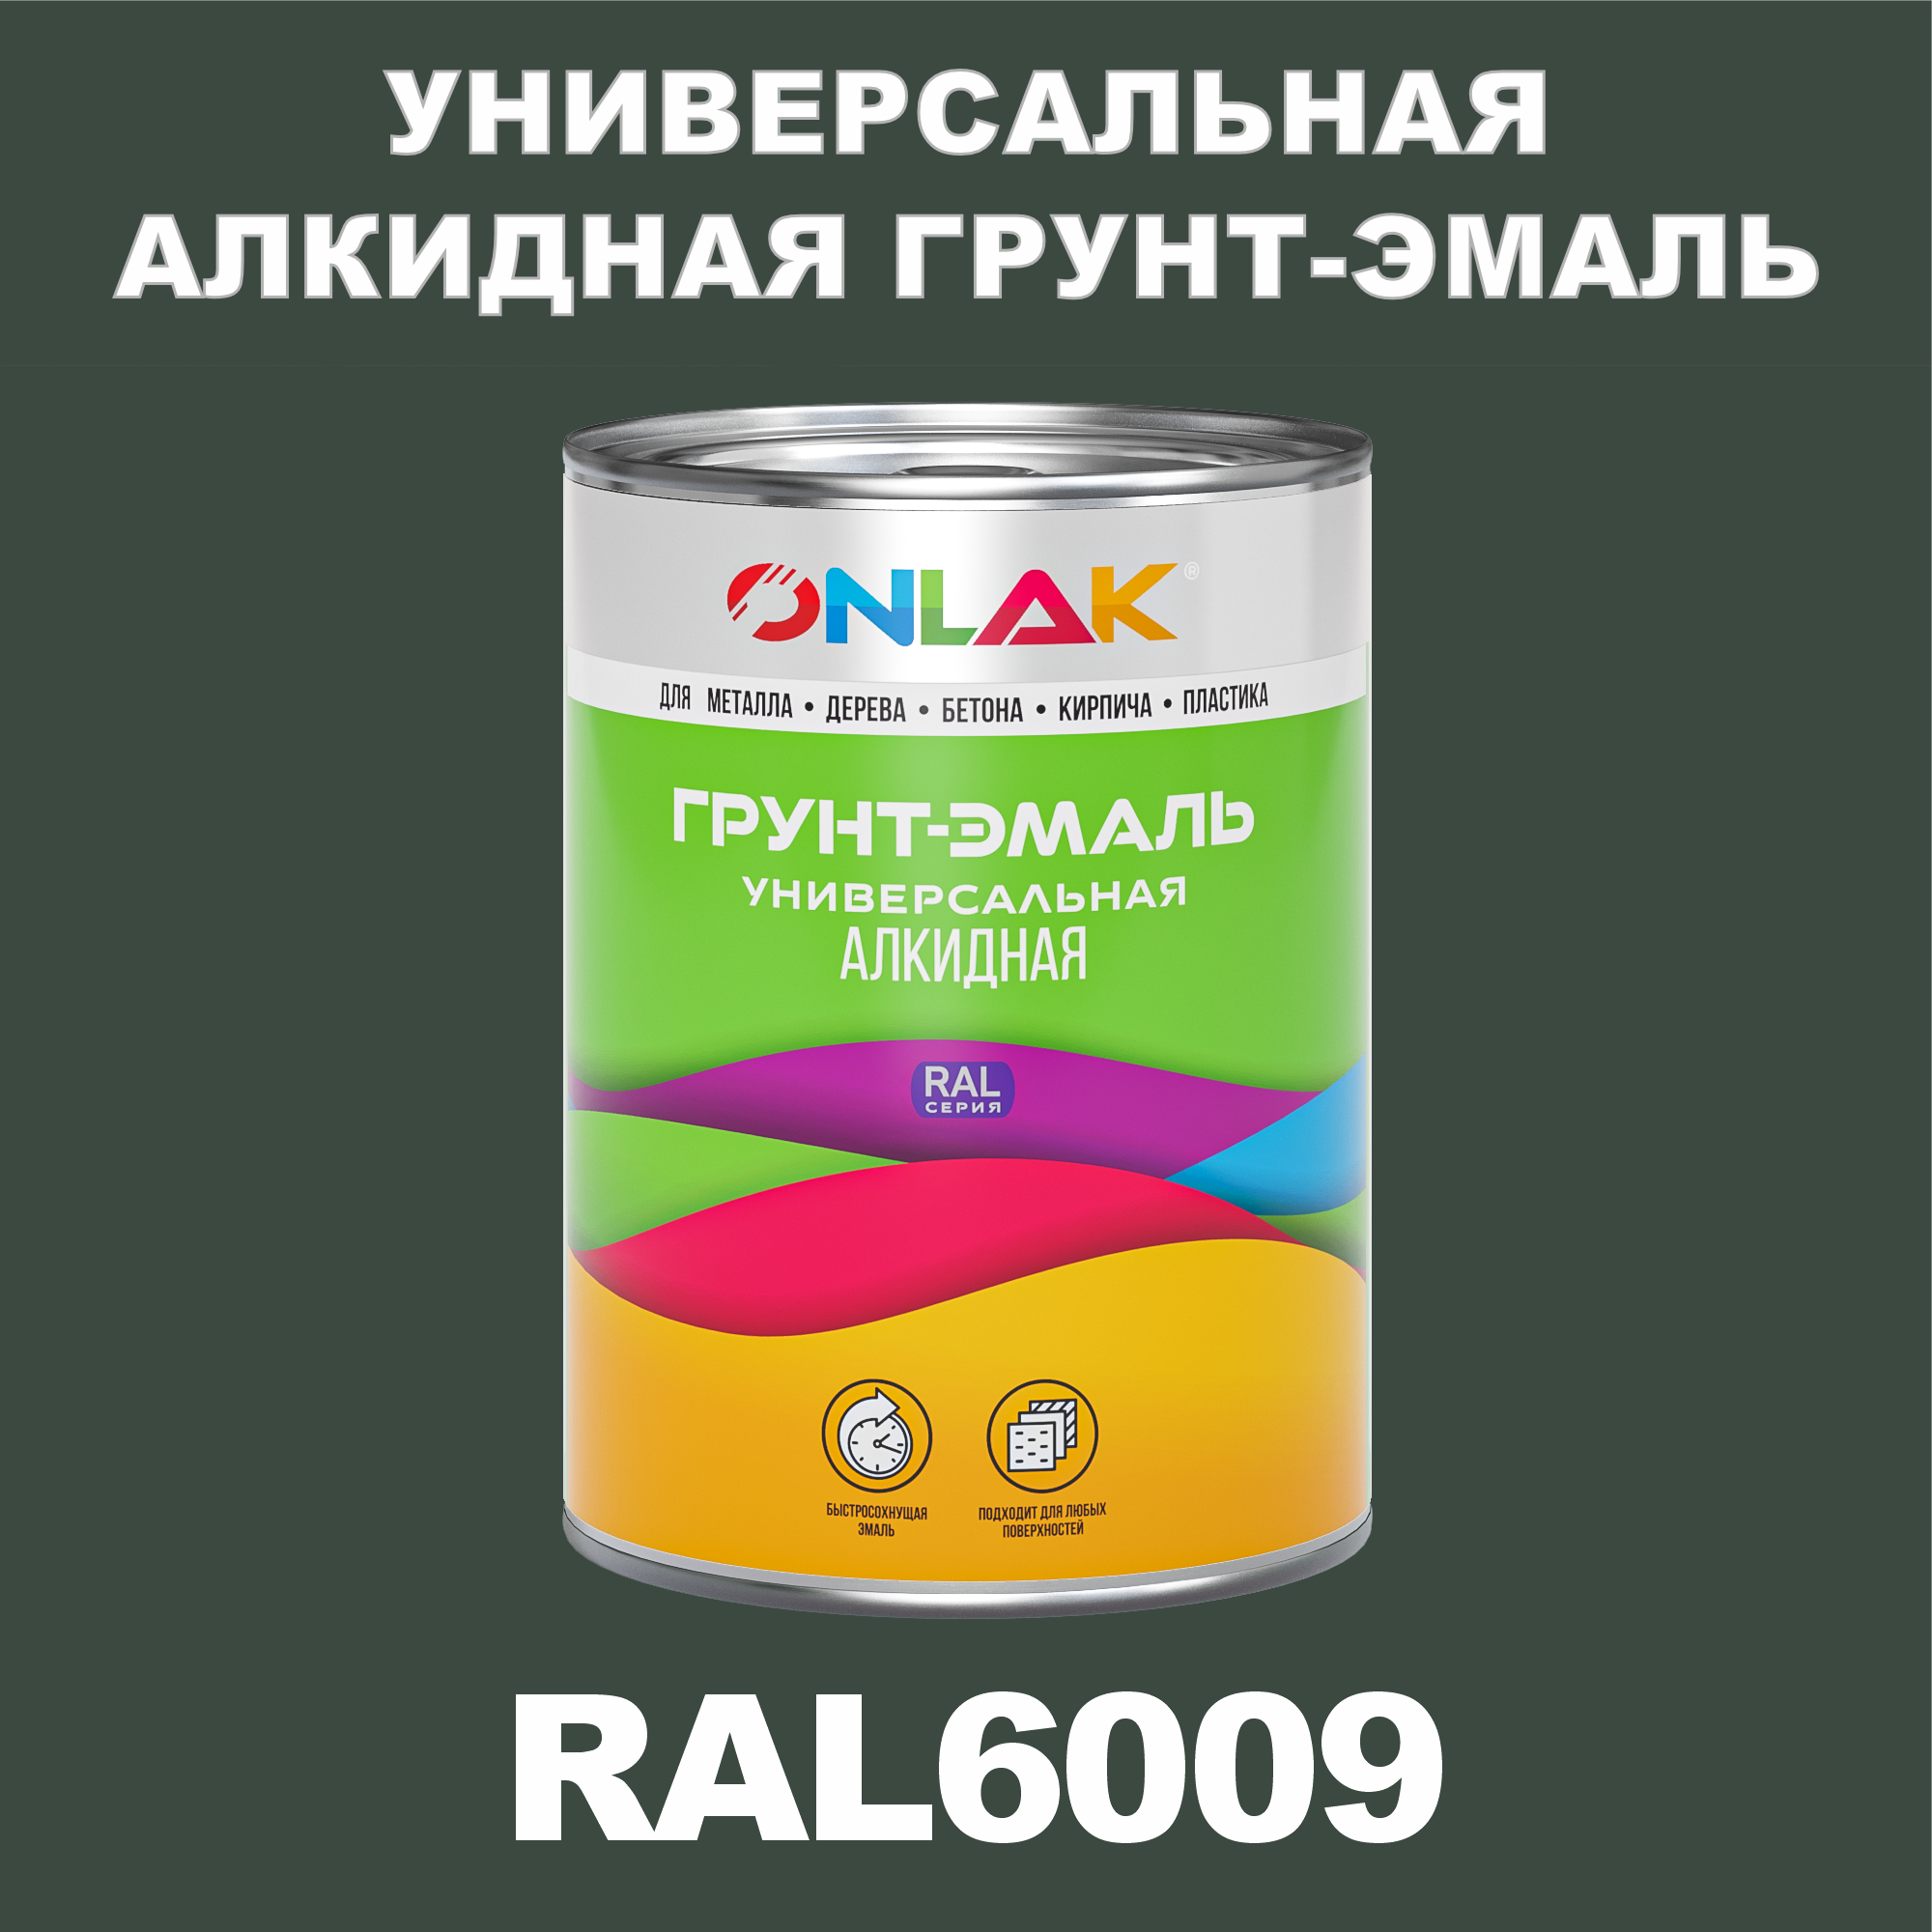 Грунт-эмаль ONLAK 1К RAL6009 антикоррозионная алкидная по металлу по ржавчине 1 кг грунт эмаль yollo по ржавчине алкидная зеленая 0 9 кг